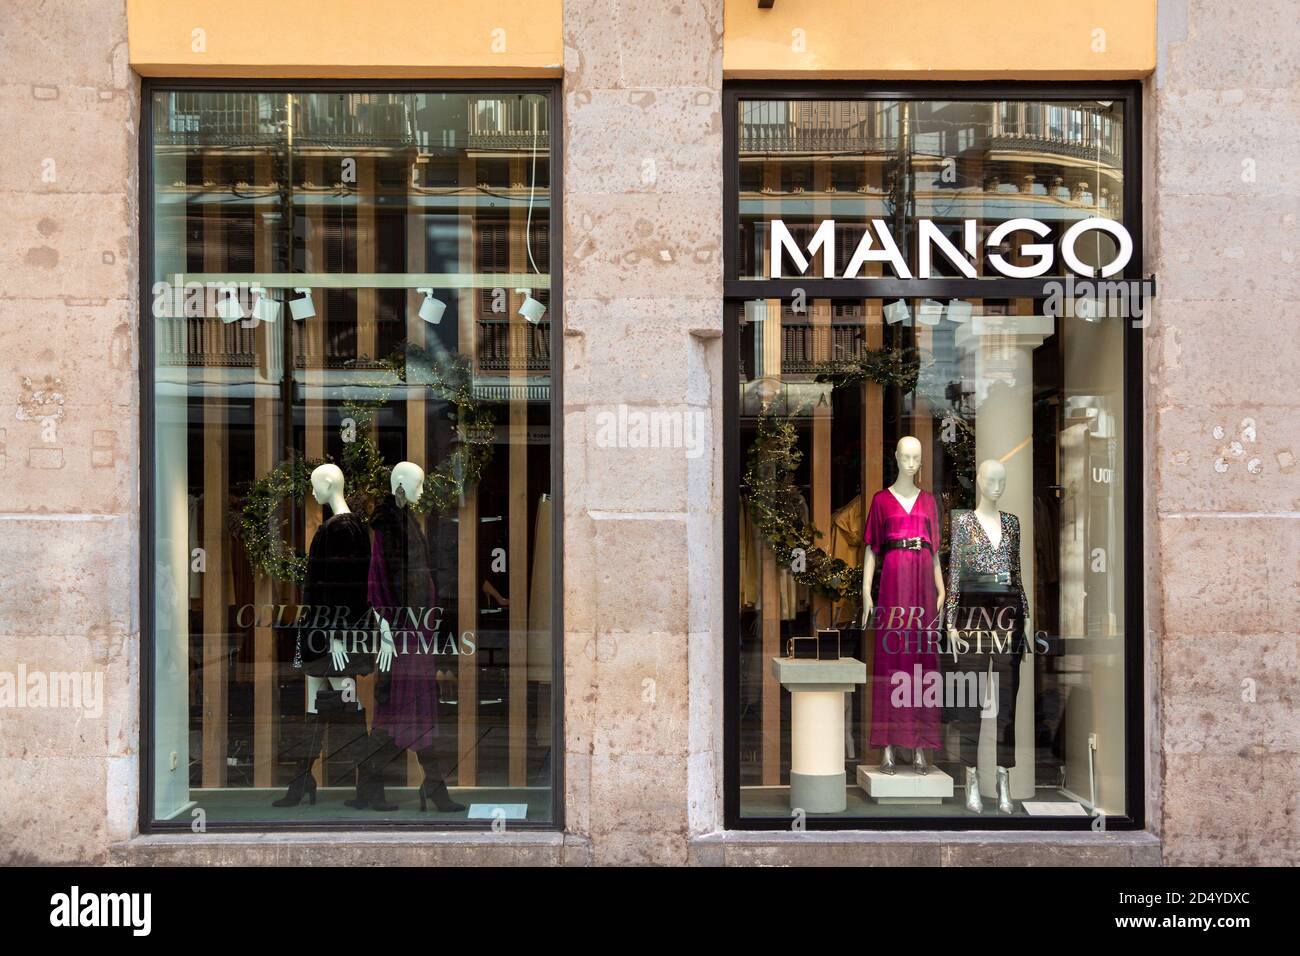 Mango-Anzeigefenster. Mango Fashion Store vorne Stockfotografie - Alamy